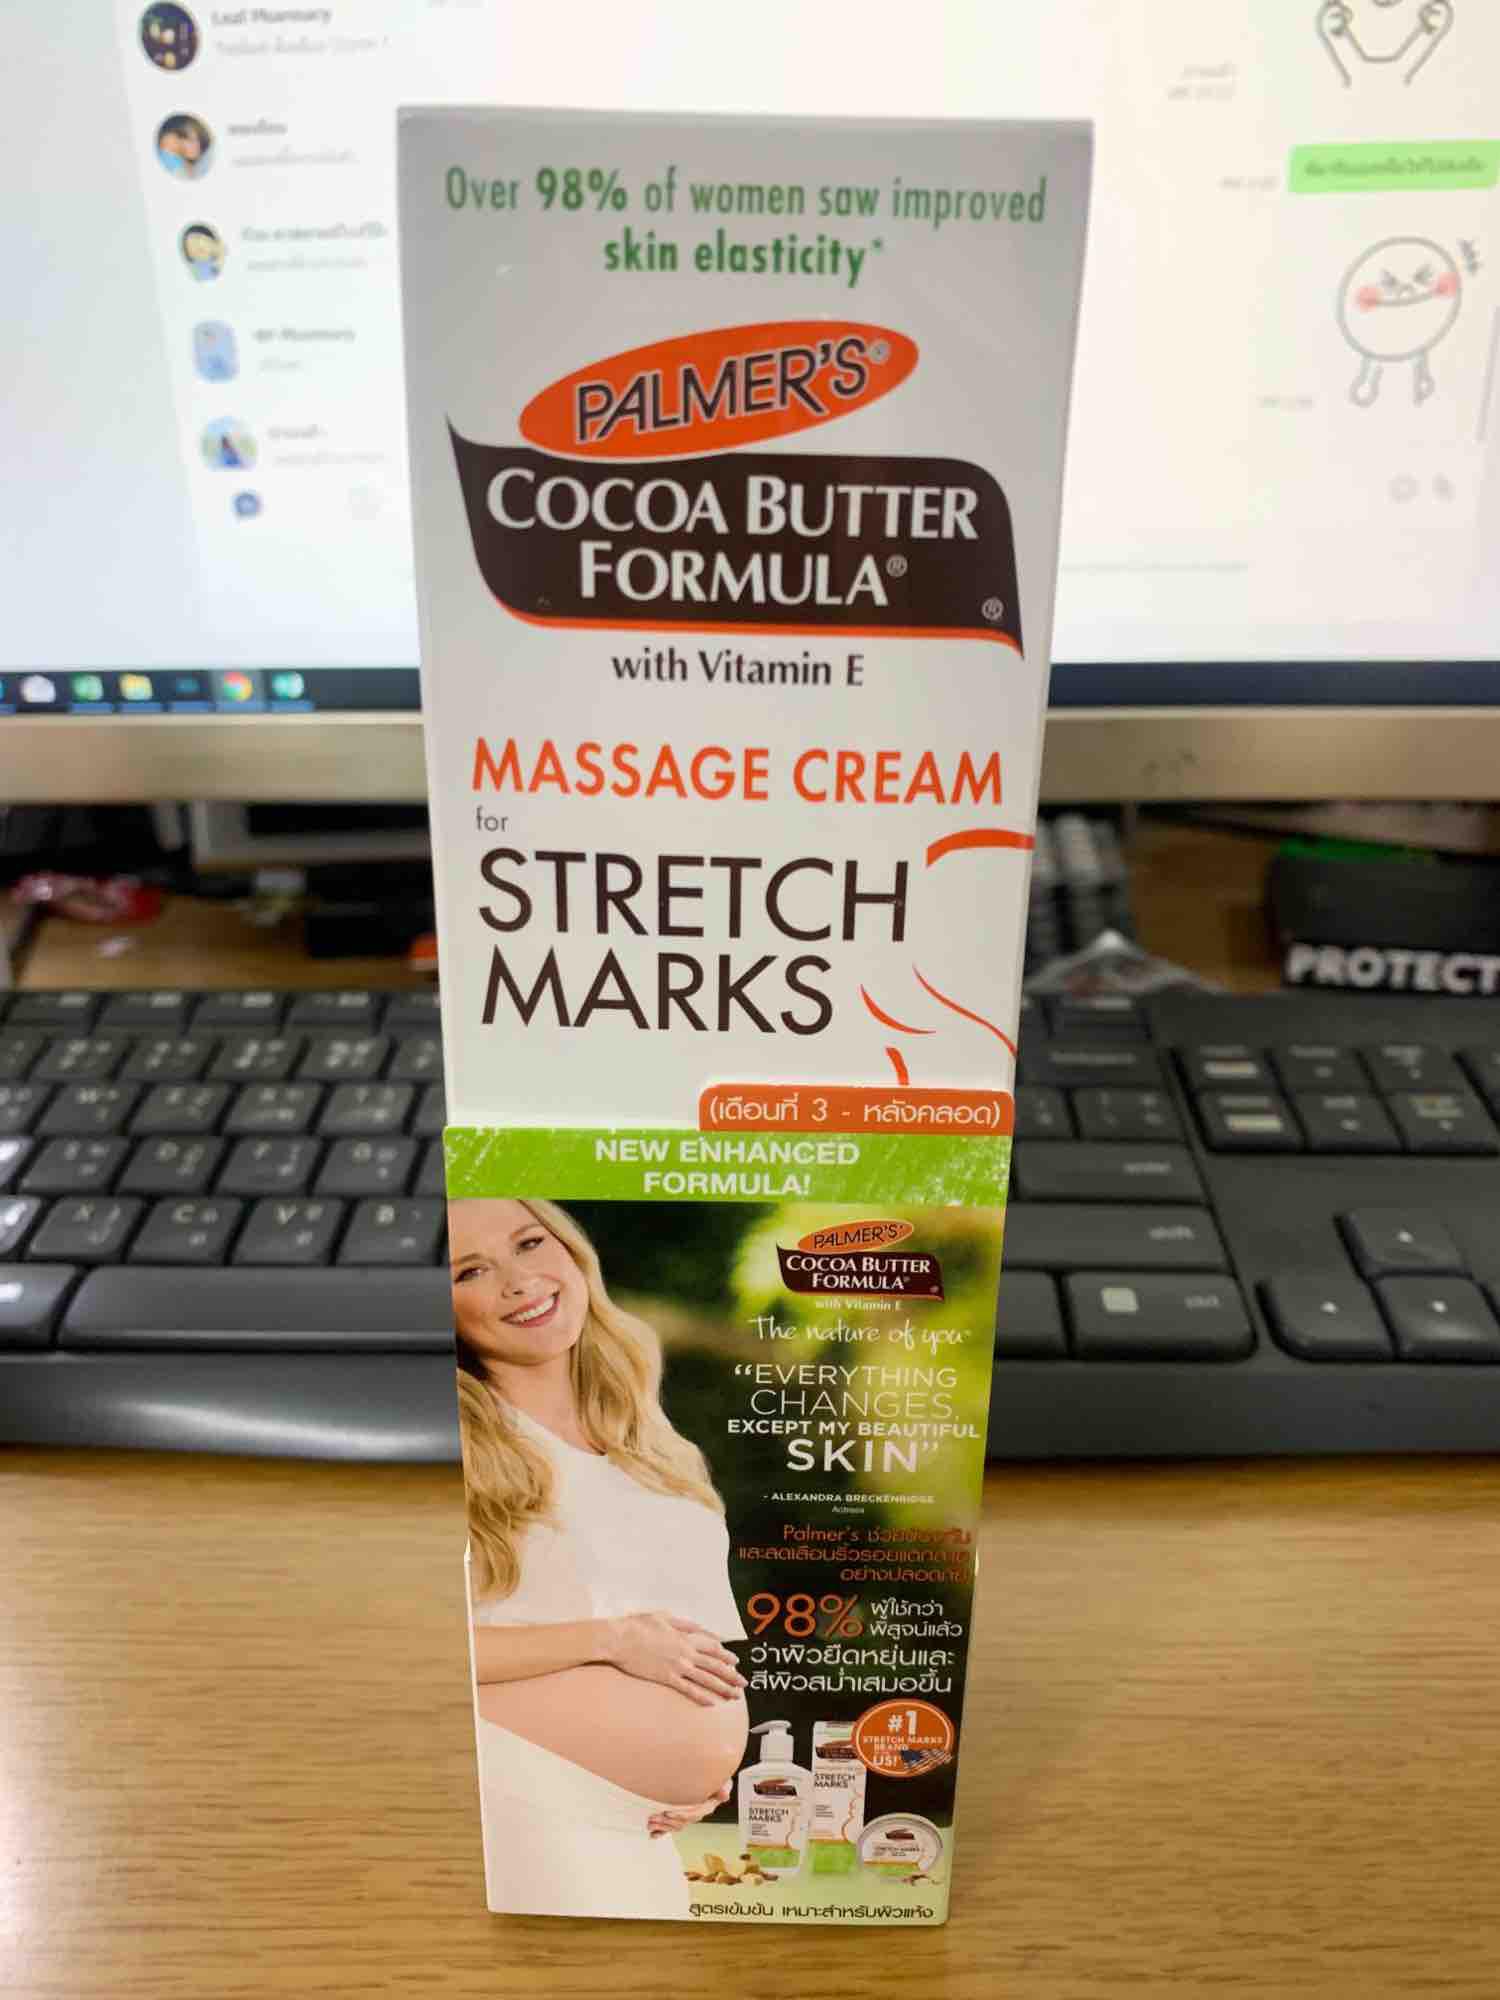 ซื้อที่ไหน Palmer‘s Cocoa Butter Formular Massage Cream for Stretch Marks Month 3 125 g. ครีมป้องกันผิวแตกลายเนื่องจากการตั้งครรภ์ เหมาะสำหรับครรภ์ที่เริ่มเดือนที่ 3 1 หลอด